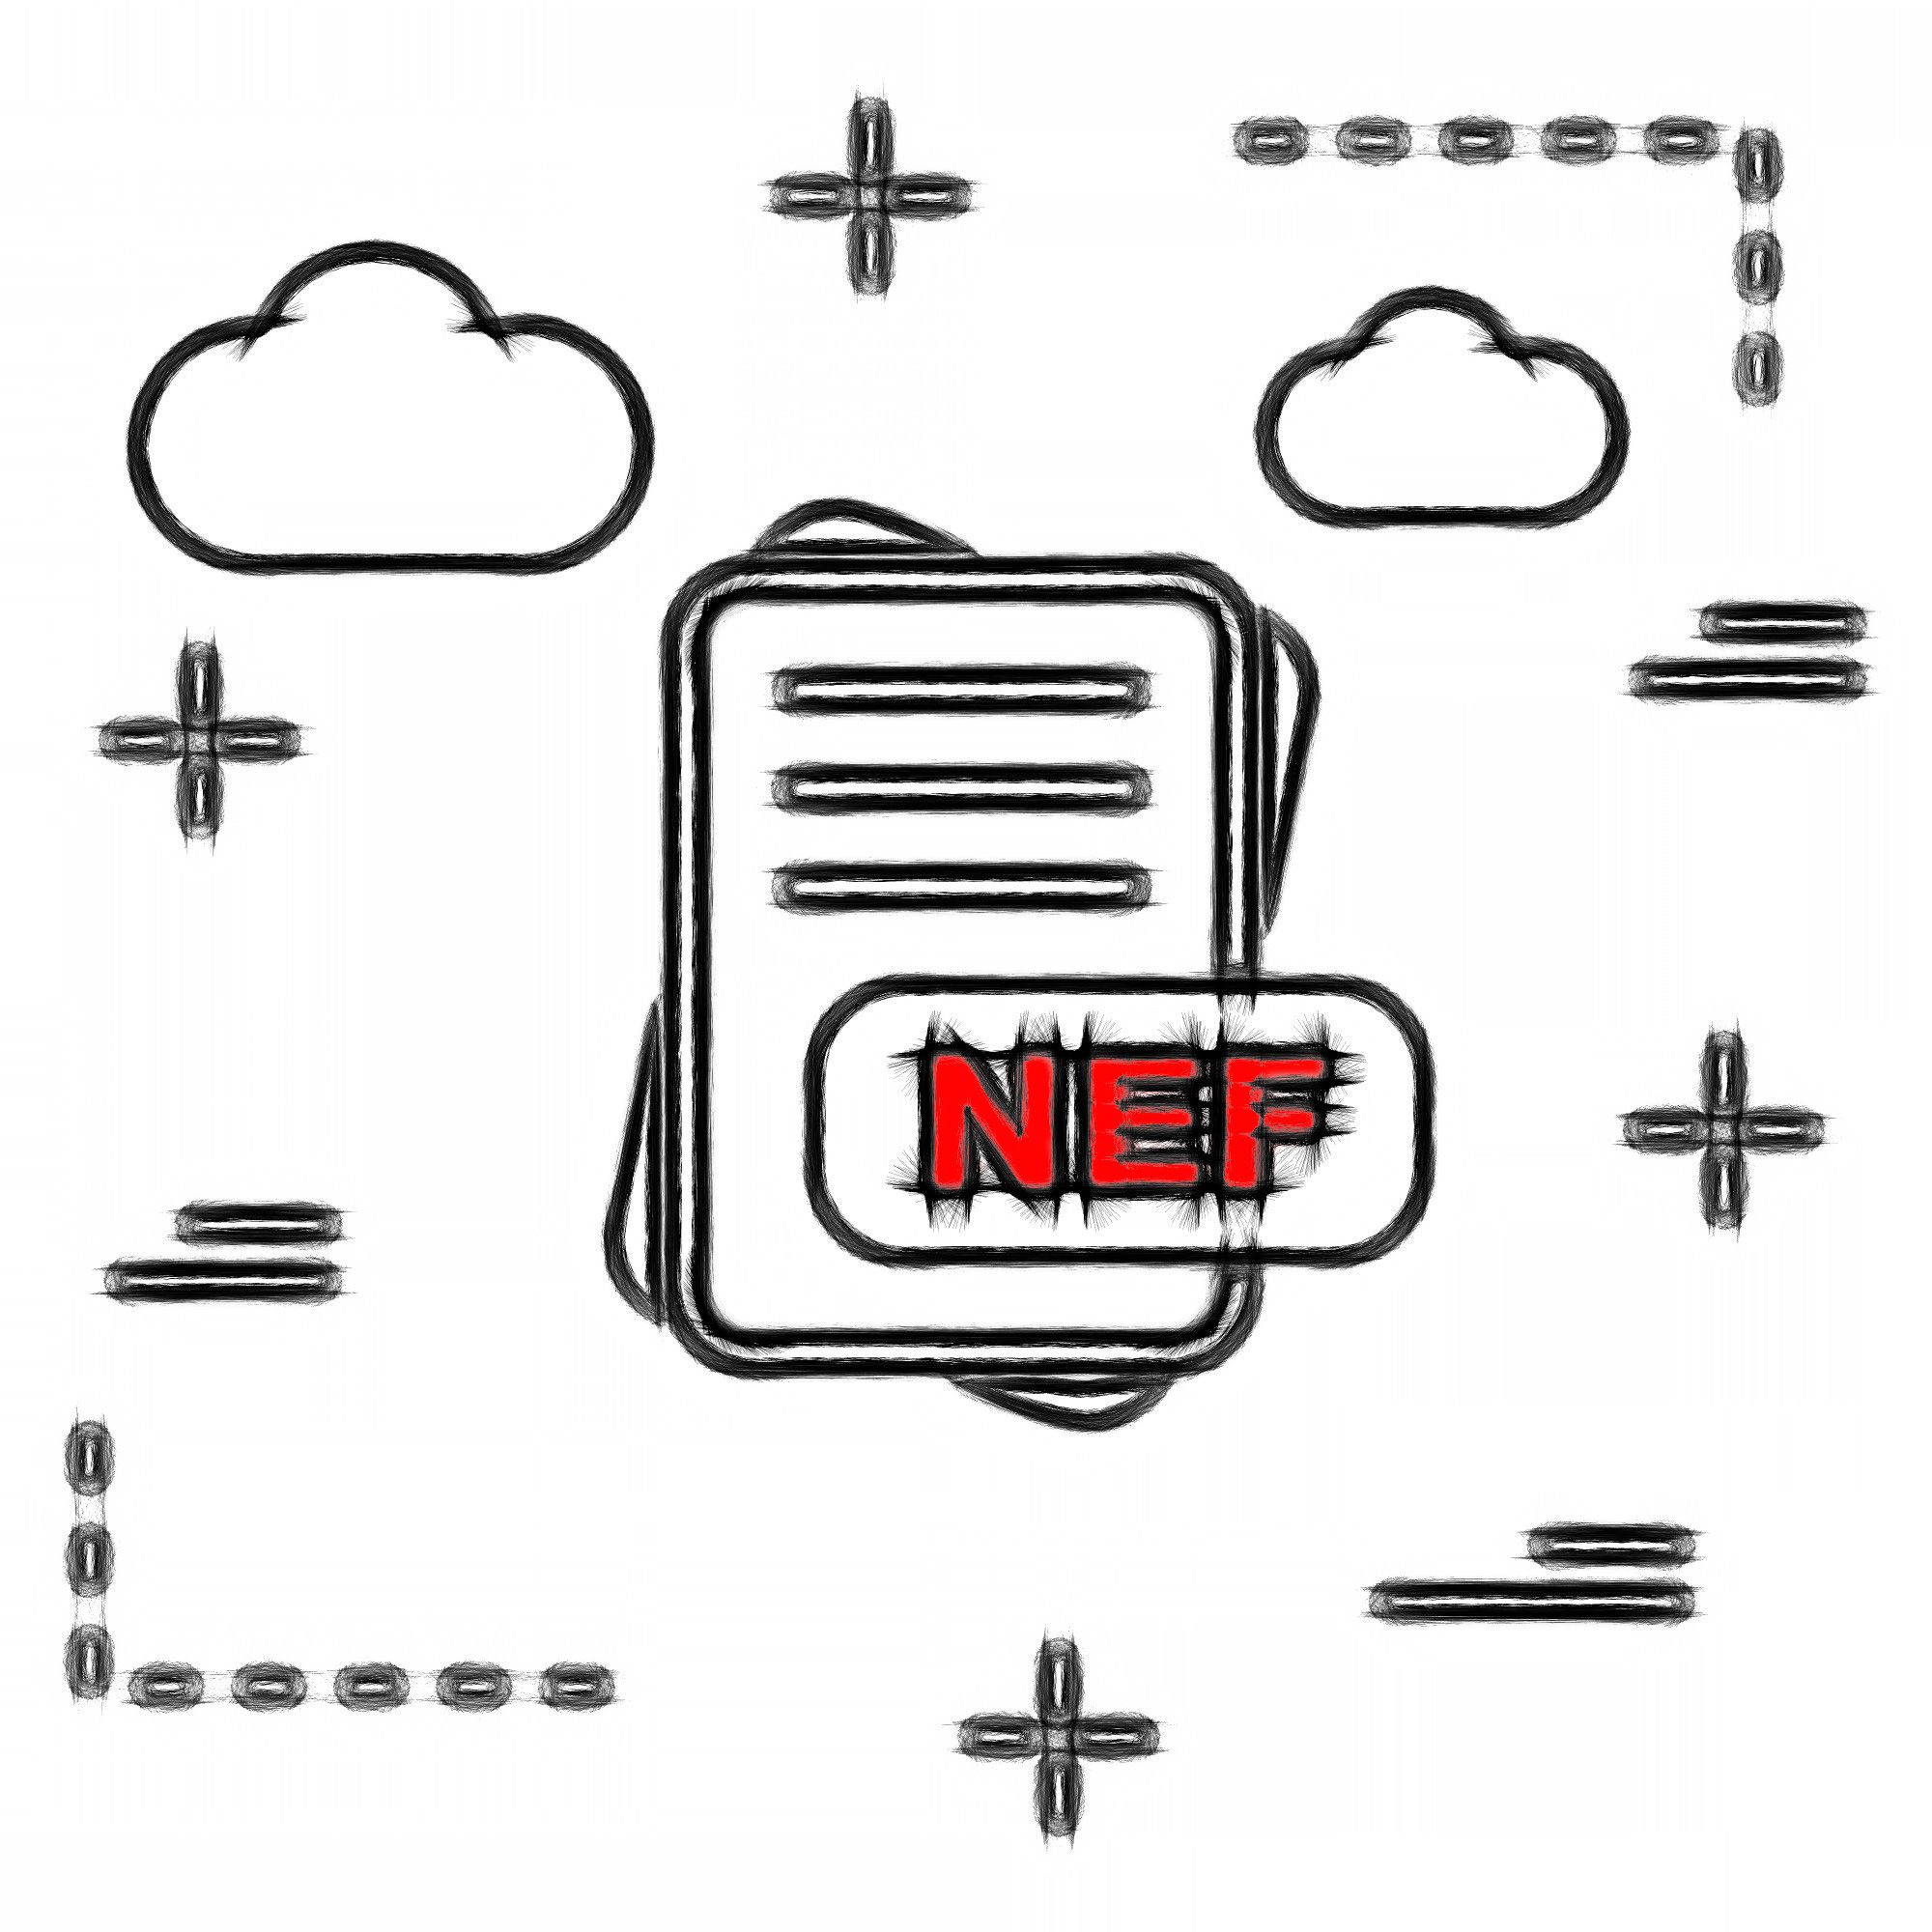 NEF-filformat..